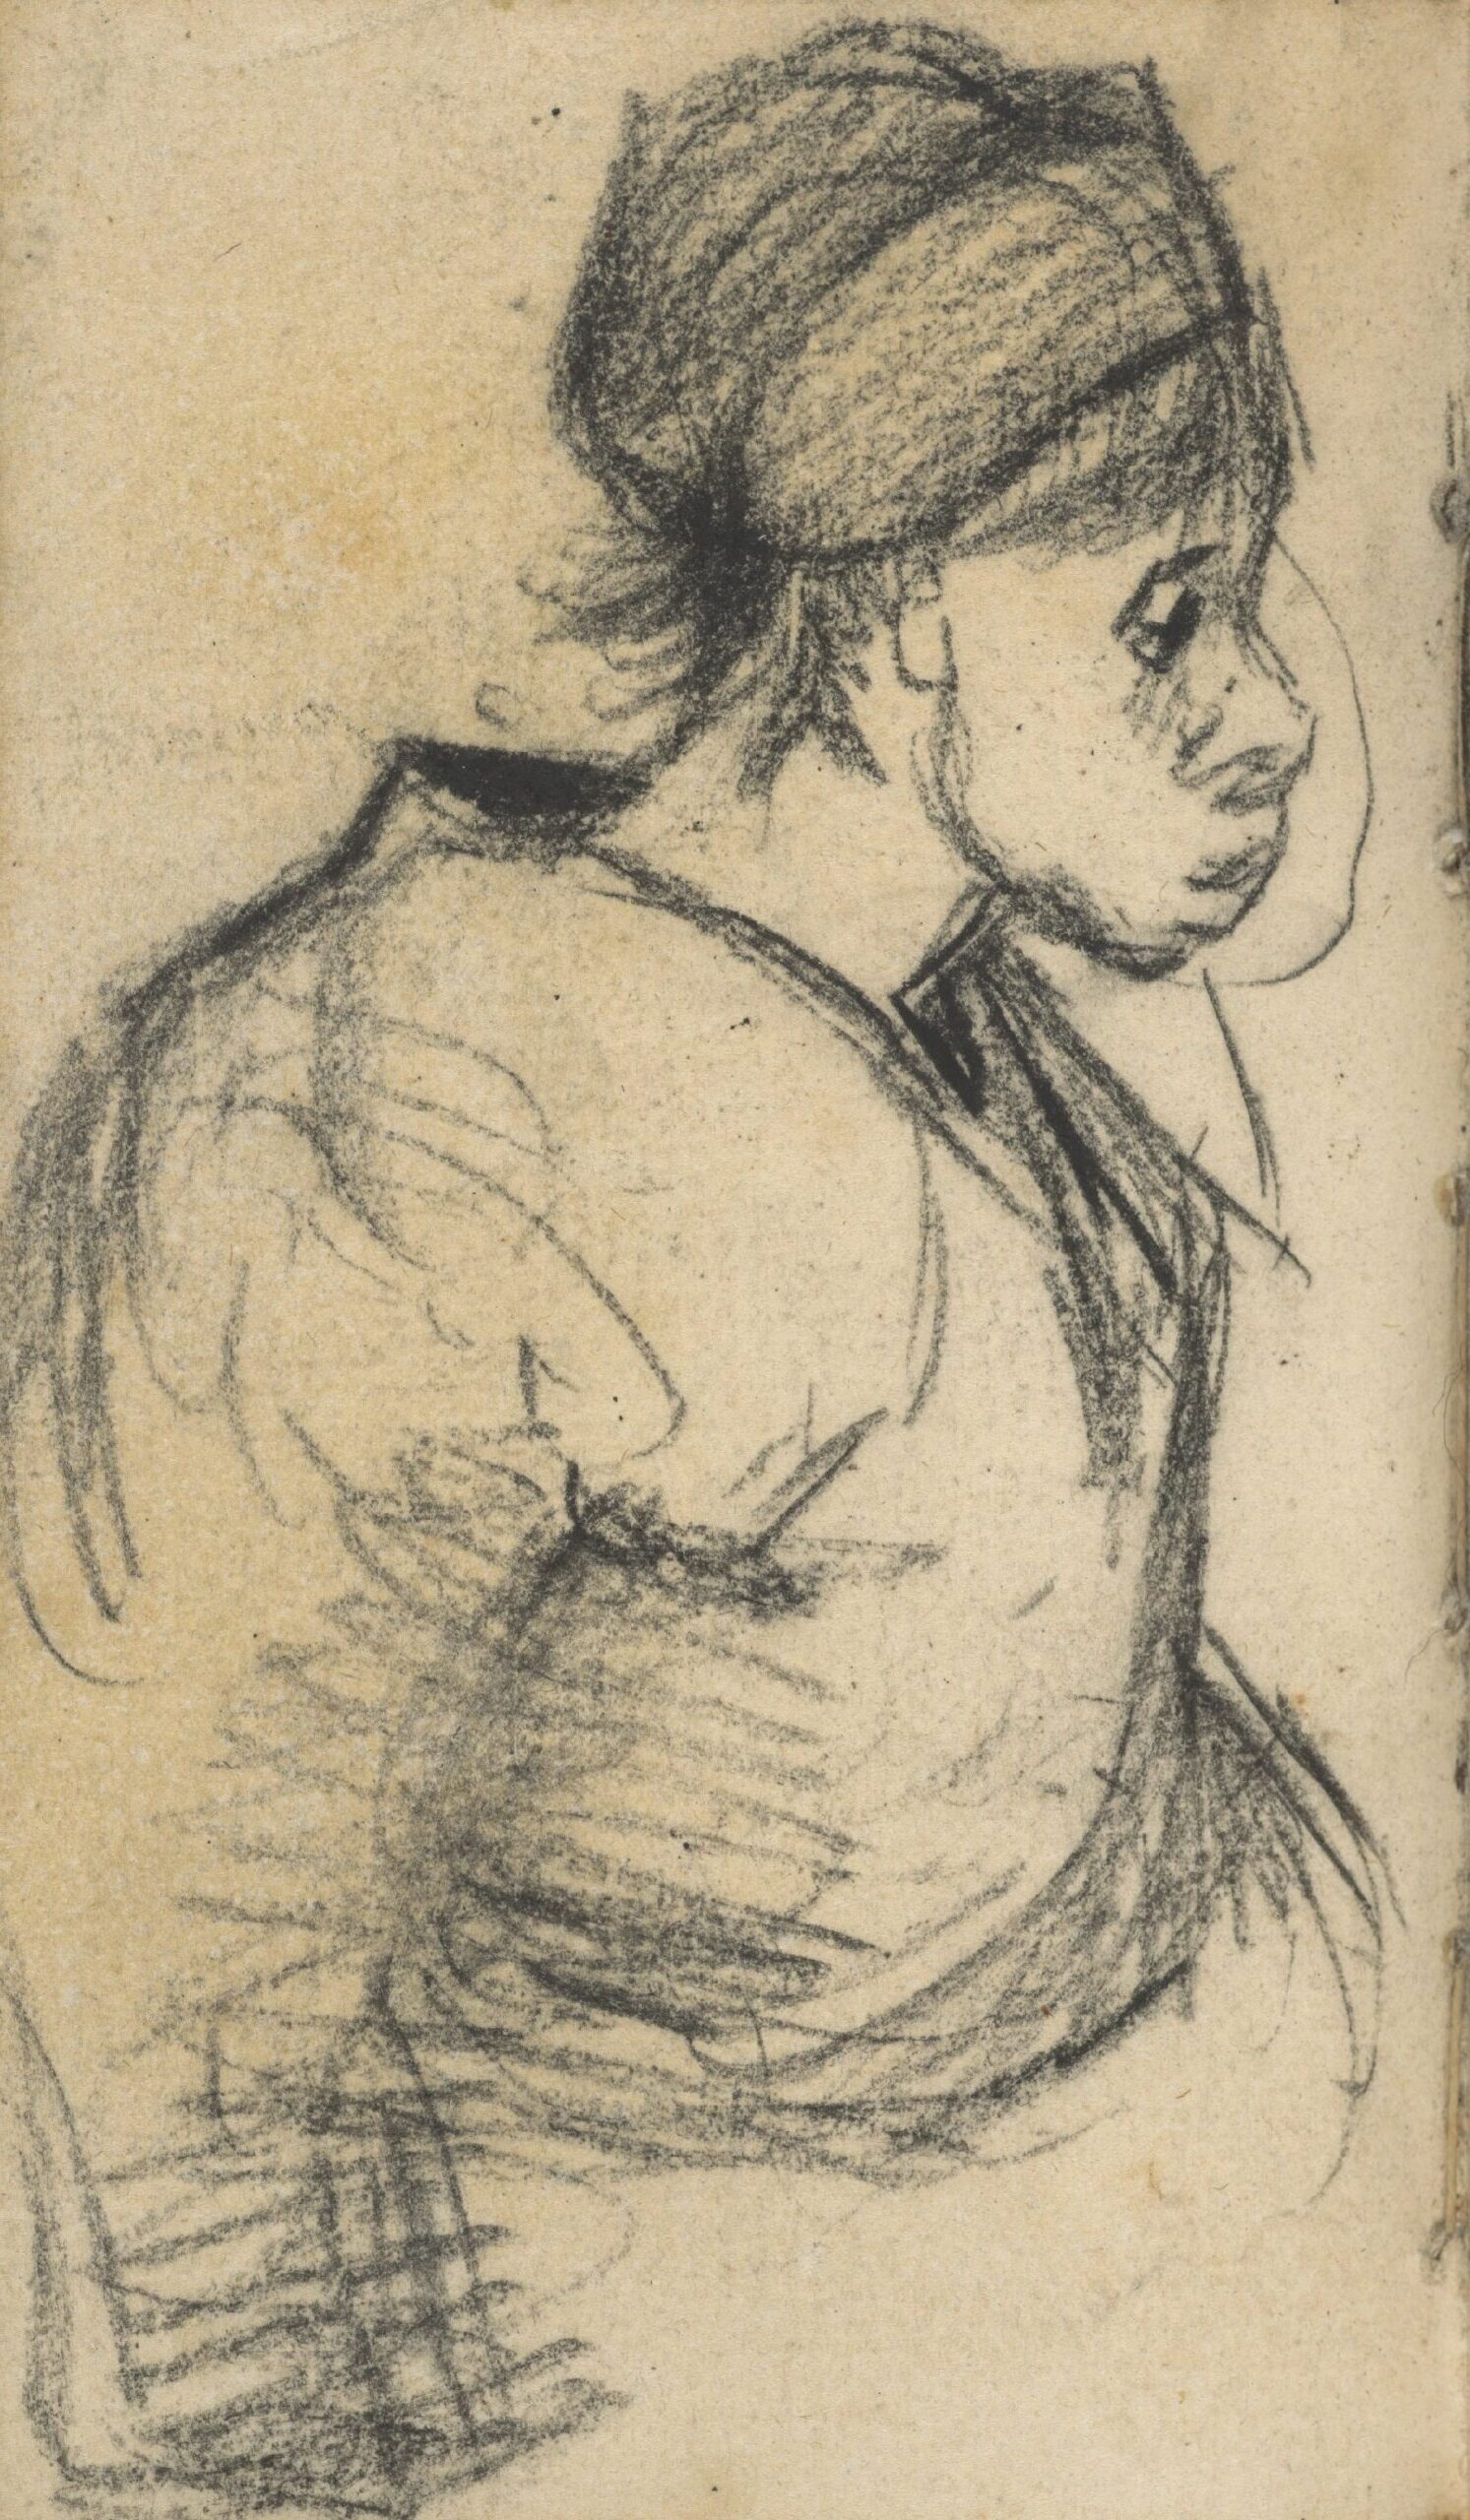 Vrouw Vincent van Gogh (1853 - 1890), Nuenen, november 1884-september 1885